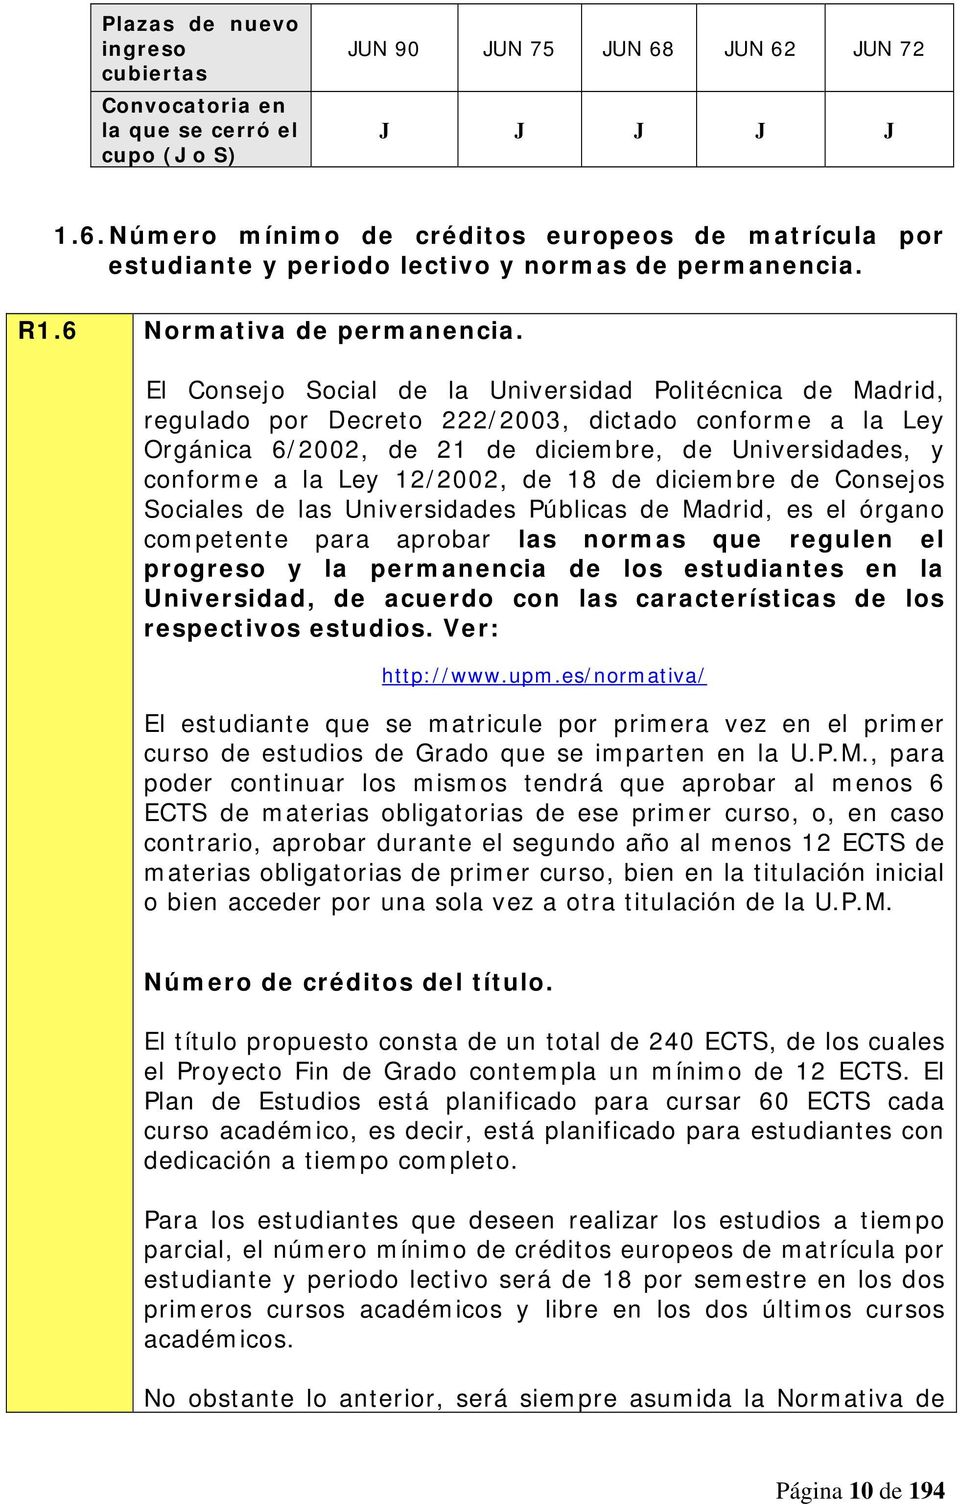 El Consejo Social de la Universidad Politécnica de Madrid, regulado por Decreto 222/2003, dictado conforme a la Ley Orgánica 6/2002, de 21 de diciembre, de Universidades, y conforme a la Ley 12/2002,